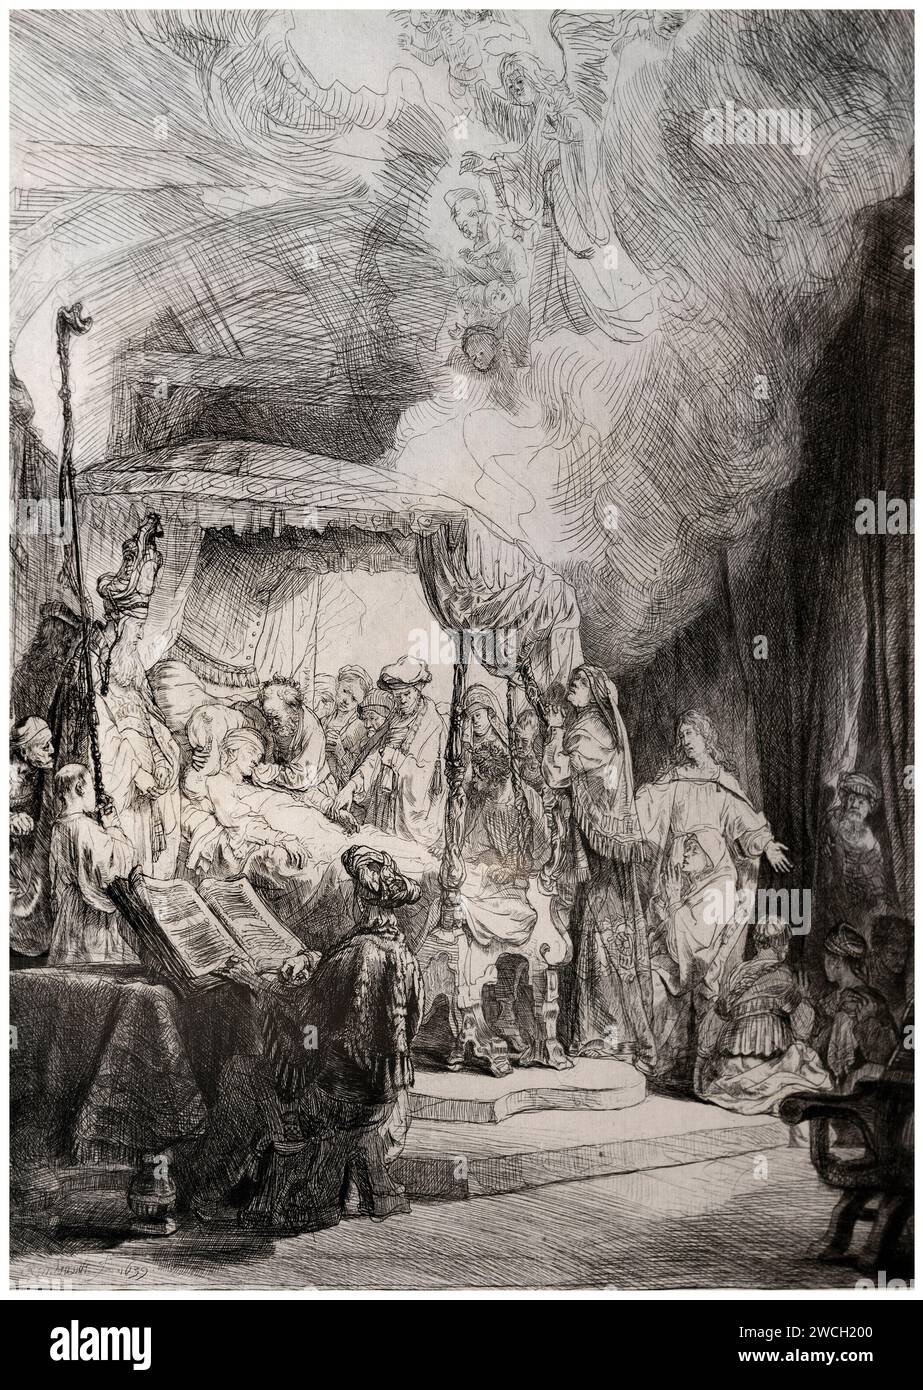 Morte della Vergine  - acquaforte, puntasecca e bulino   - Rembrandt Harmensz van Rijn   - 1639  -  Pavia, Civica Pinacoteca Malaspina Stock Photo